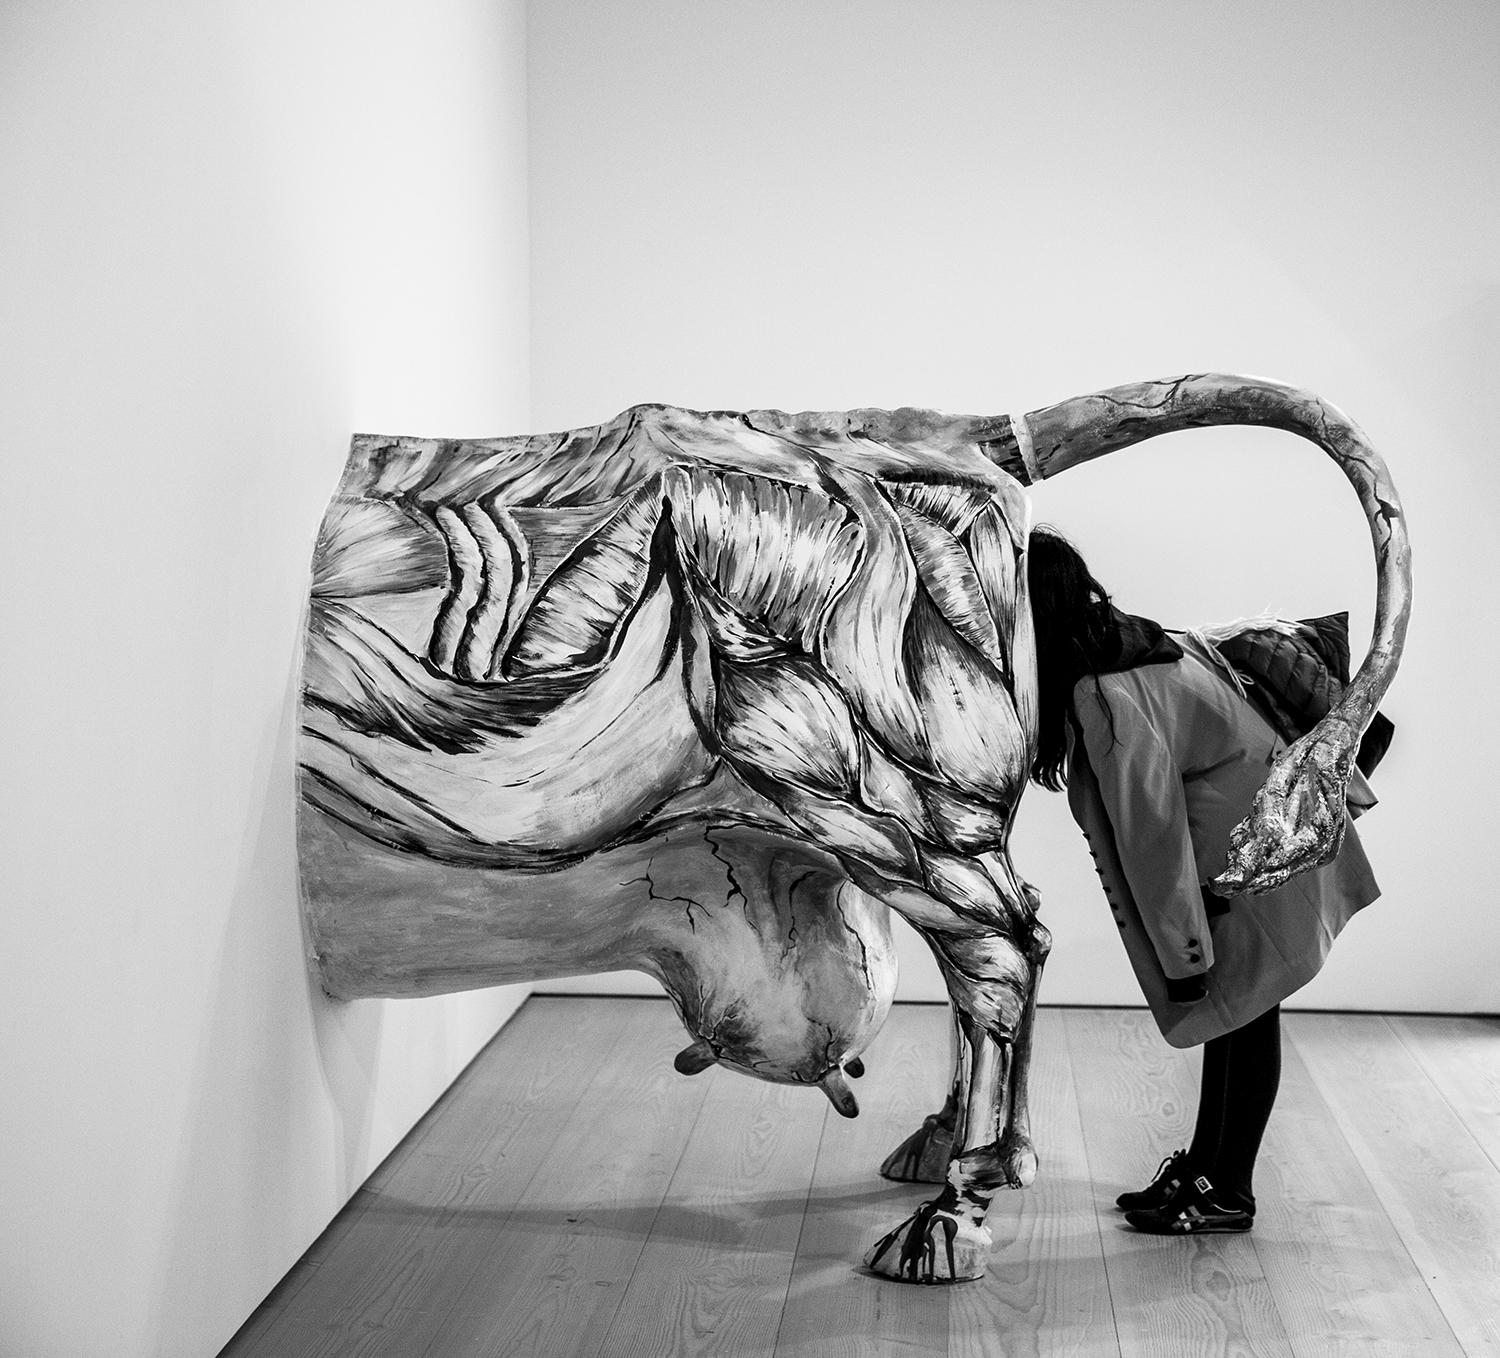 Edition de 25
signé et numéroté par l'artiste

Une femme regarde le plastique d'une vache. Cette photo a été prise dans un musée à Berlin.

JJK est le pseudonyme de l'un des artistes photographes les plus célèbres au monde.
Dans sa série "Always in